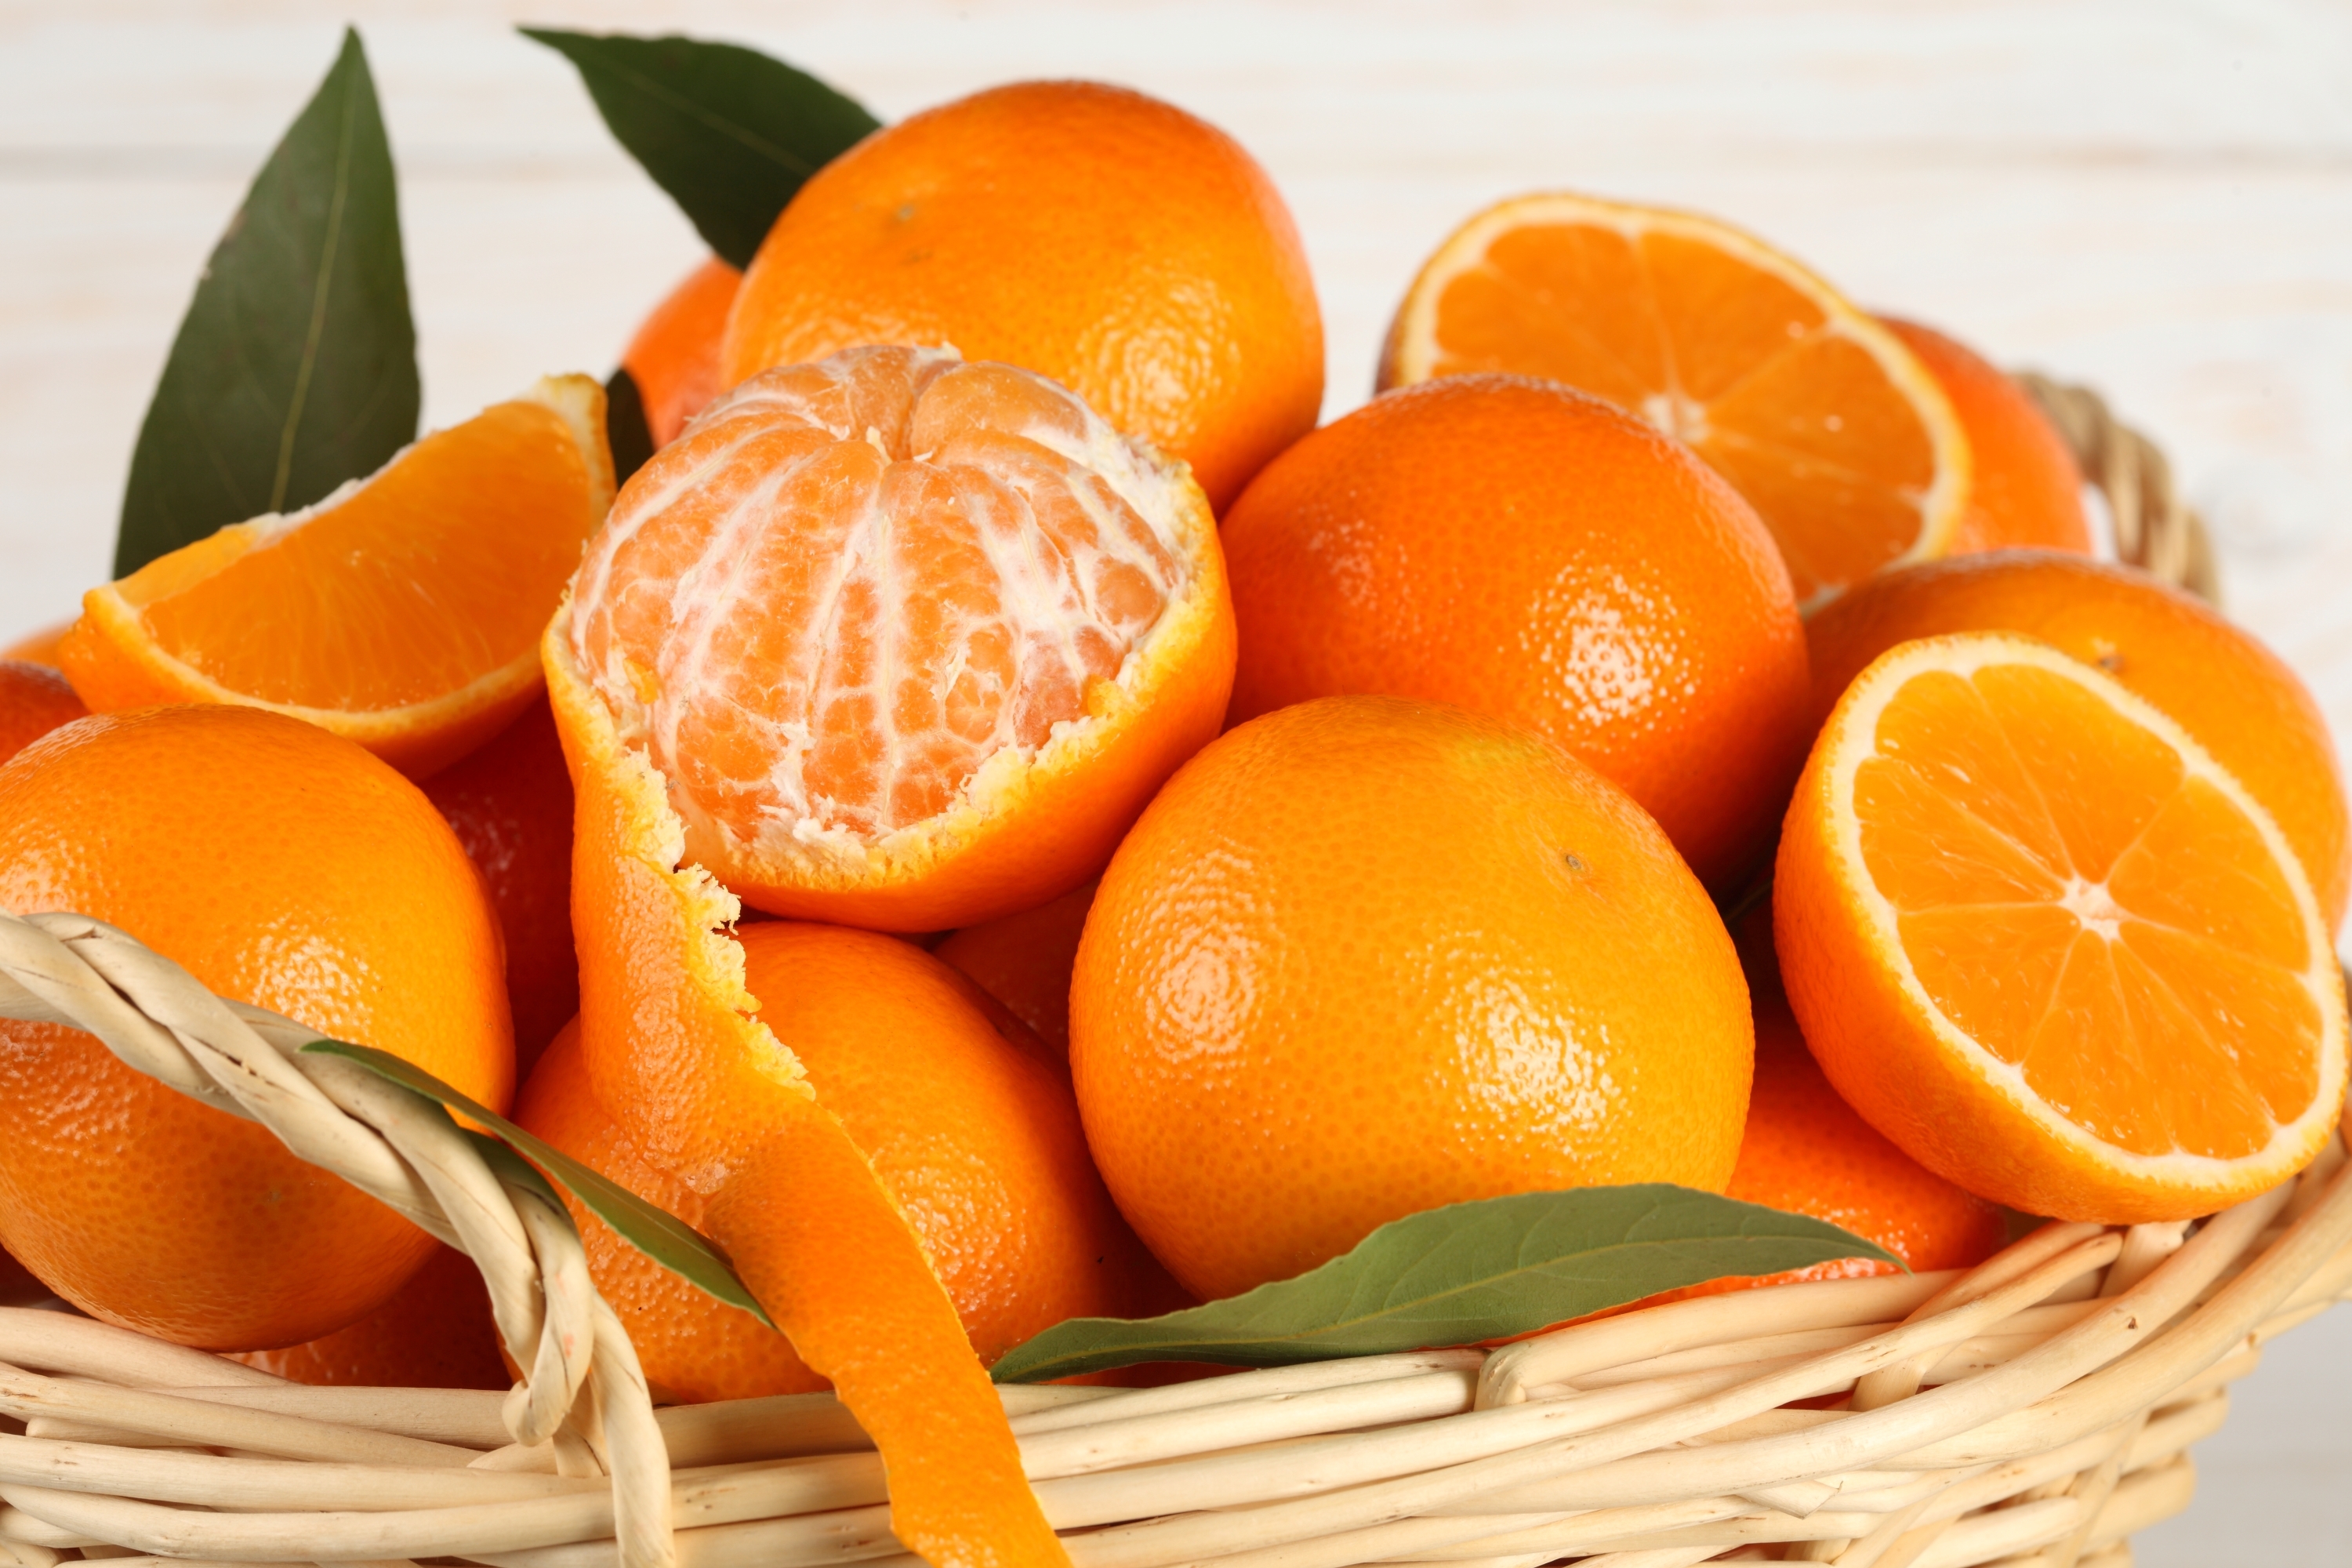 Kış Mevsiminin C Vitamini Deposu Mandalina ve Portakal Vatandaşın Gözdesi!